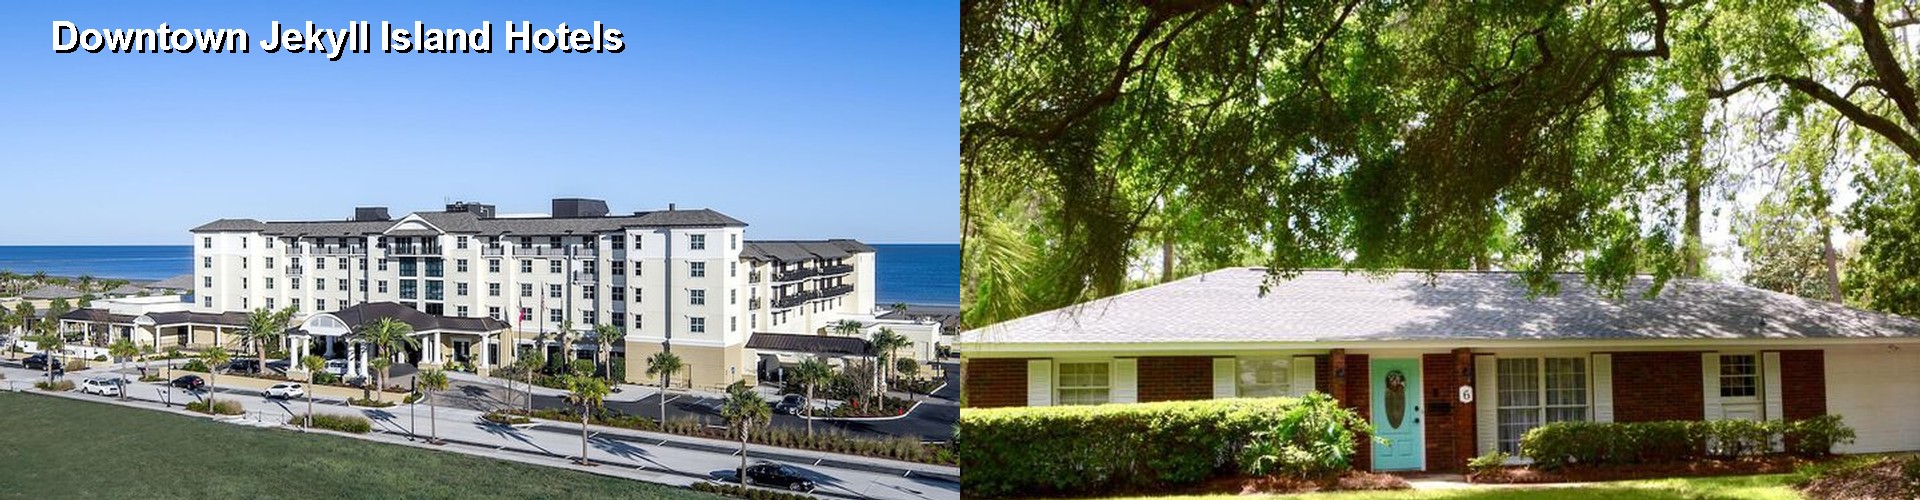 5 Best Hotels near Downtown Jekyll Island